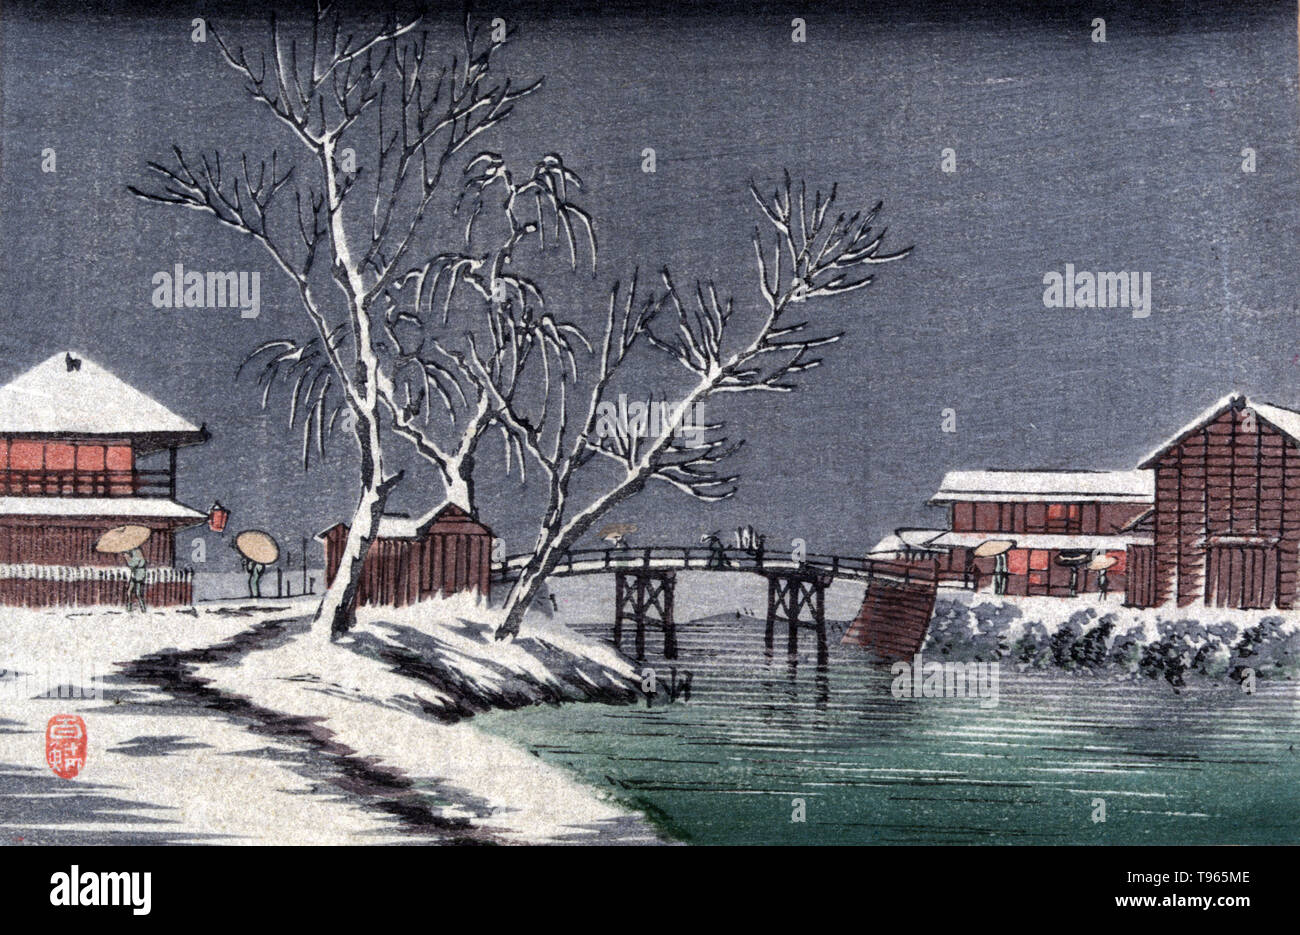 Yuki no horiwari. Canal dans la neige. Paysage d'hiver avec des bâtiments et un petit pont sur un canal. L'Ukiyo-e (photo du monde flottant) est un genre d'art japonais qui a prospéré à partir du xviie au xixe siècles. L'Ukiyo-e a été au centre de formation de la perception de l'Occident de l'art japonais à la fin du xixe siècle. Le genre du paysage en est venue à dominer les perceptions occidentales de l'ukiyo-e. Le paysage japonais diffère de la tradition occidentale en ce qu'il s'est appuyé plus fortement sur l'imagination, la composition, et l'atmosphère que sur le strict respect de la nature. Aucun artiste crédité, vers 1900-20. Banque D'Images